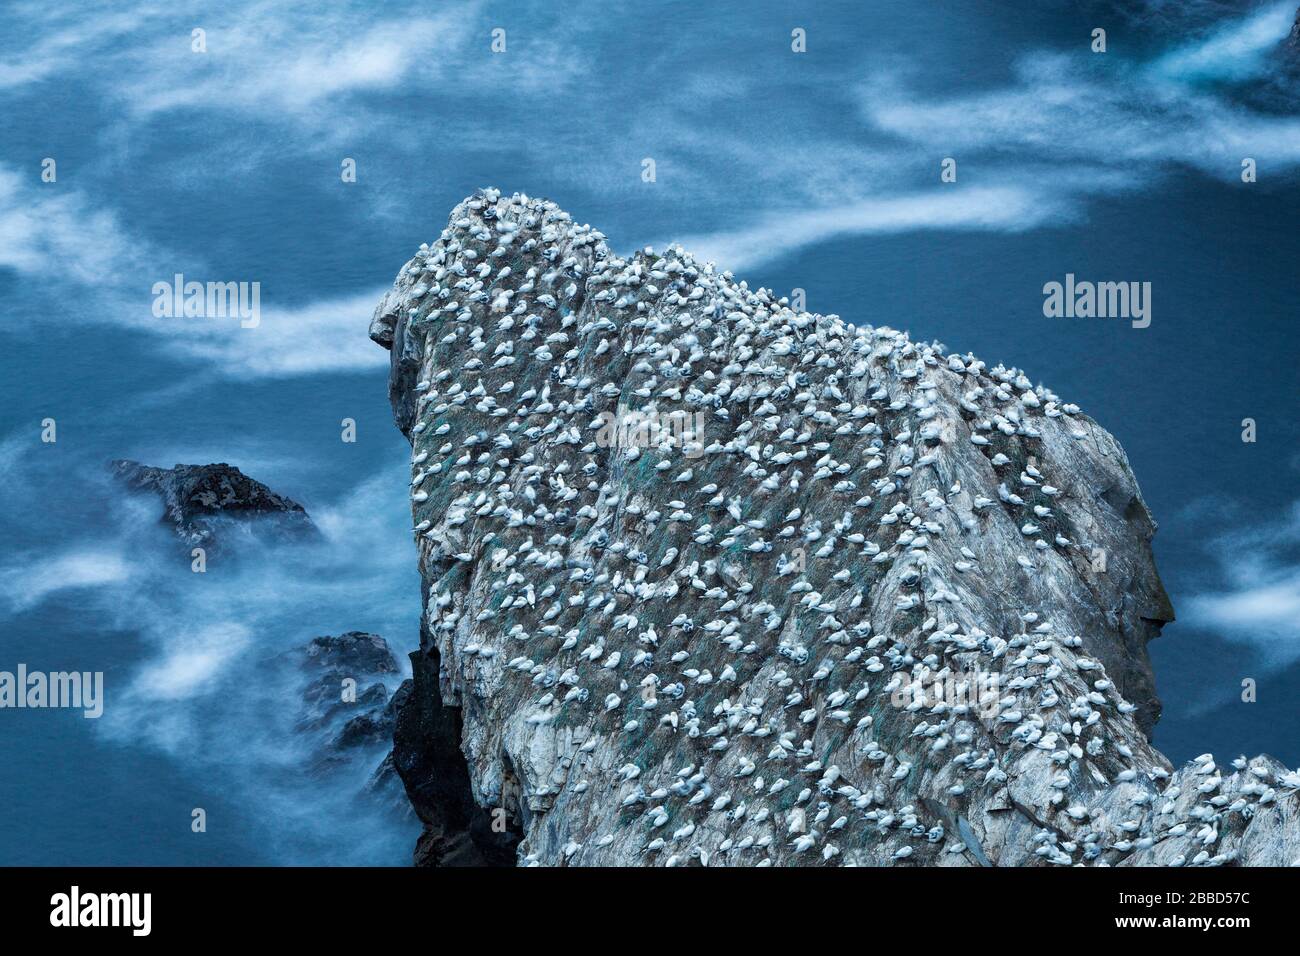 Gannet (Morus bassanus), îles Shetland Hermaness en Écosse Banque D'Images